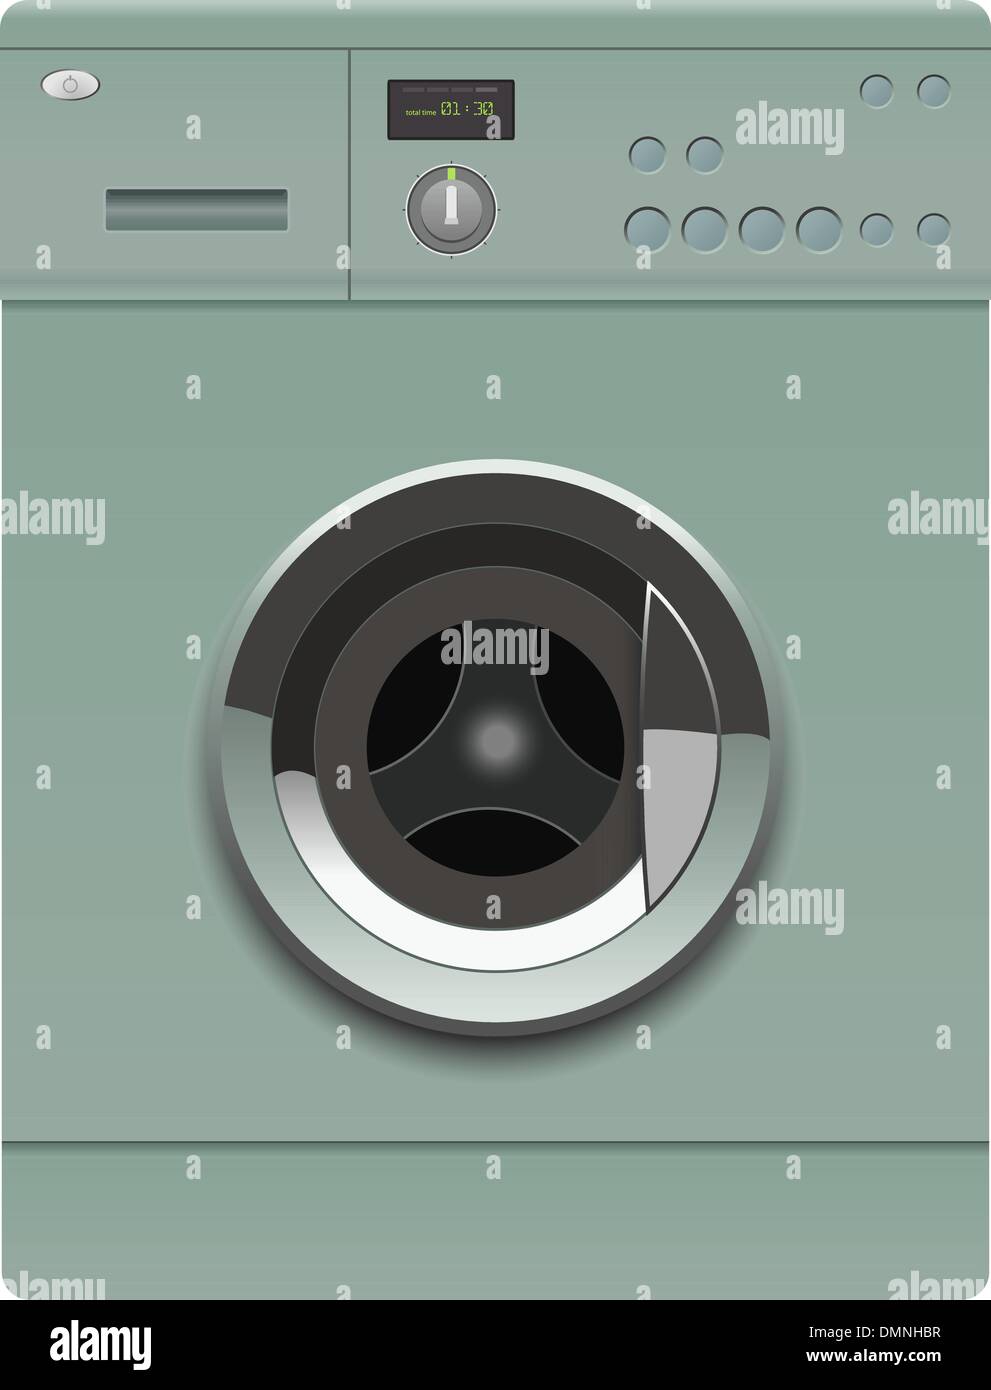 washing machine Stock Vector